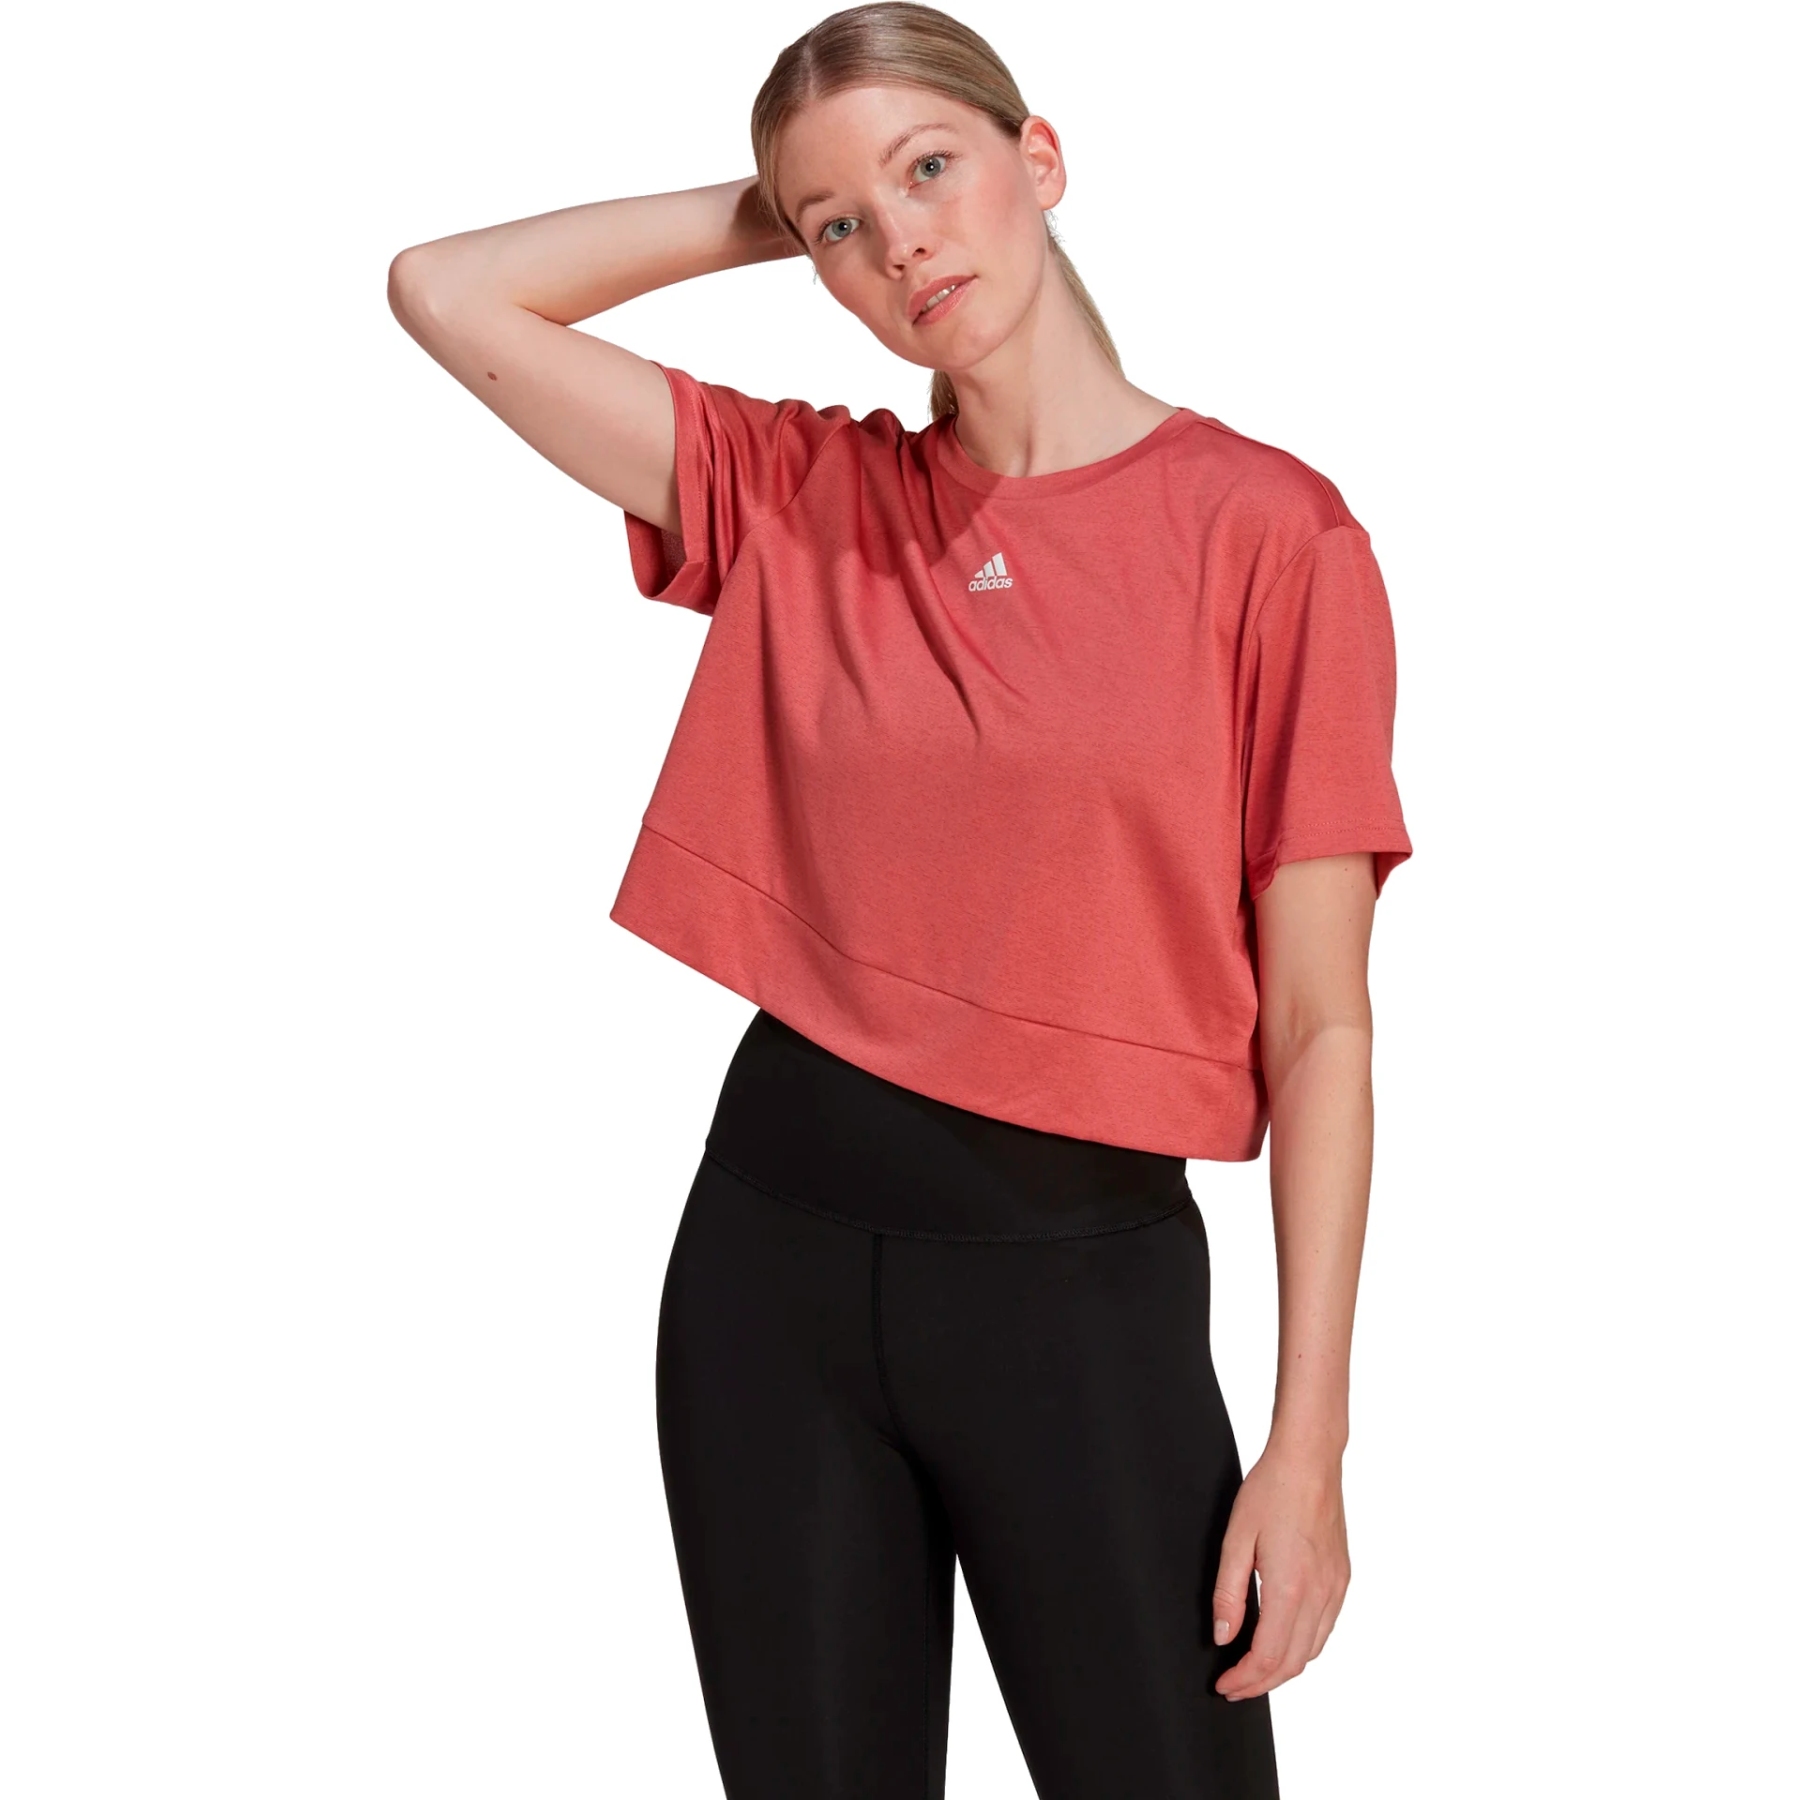 Produktbild von adidas Frauen AEROREADY Studio Loose Crop T-Shirt - wonder red/white HM8721